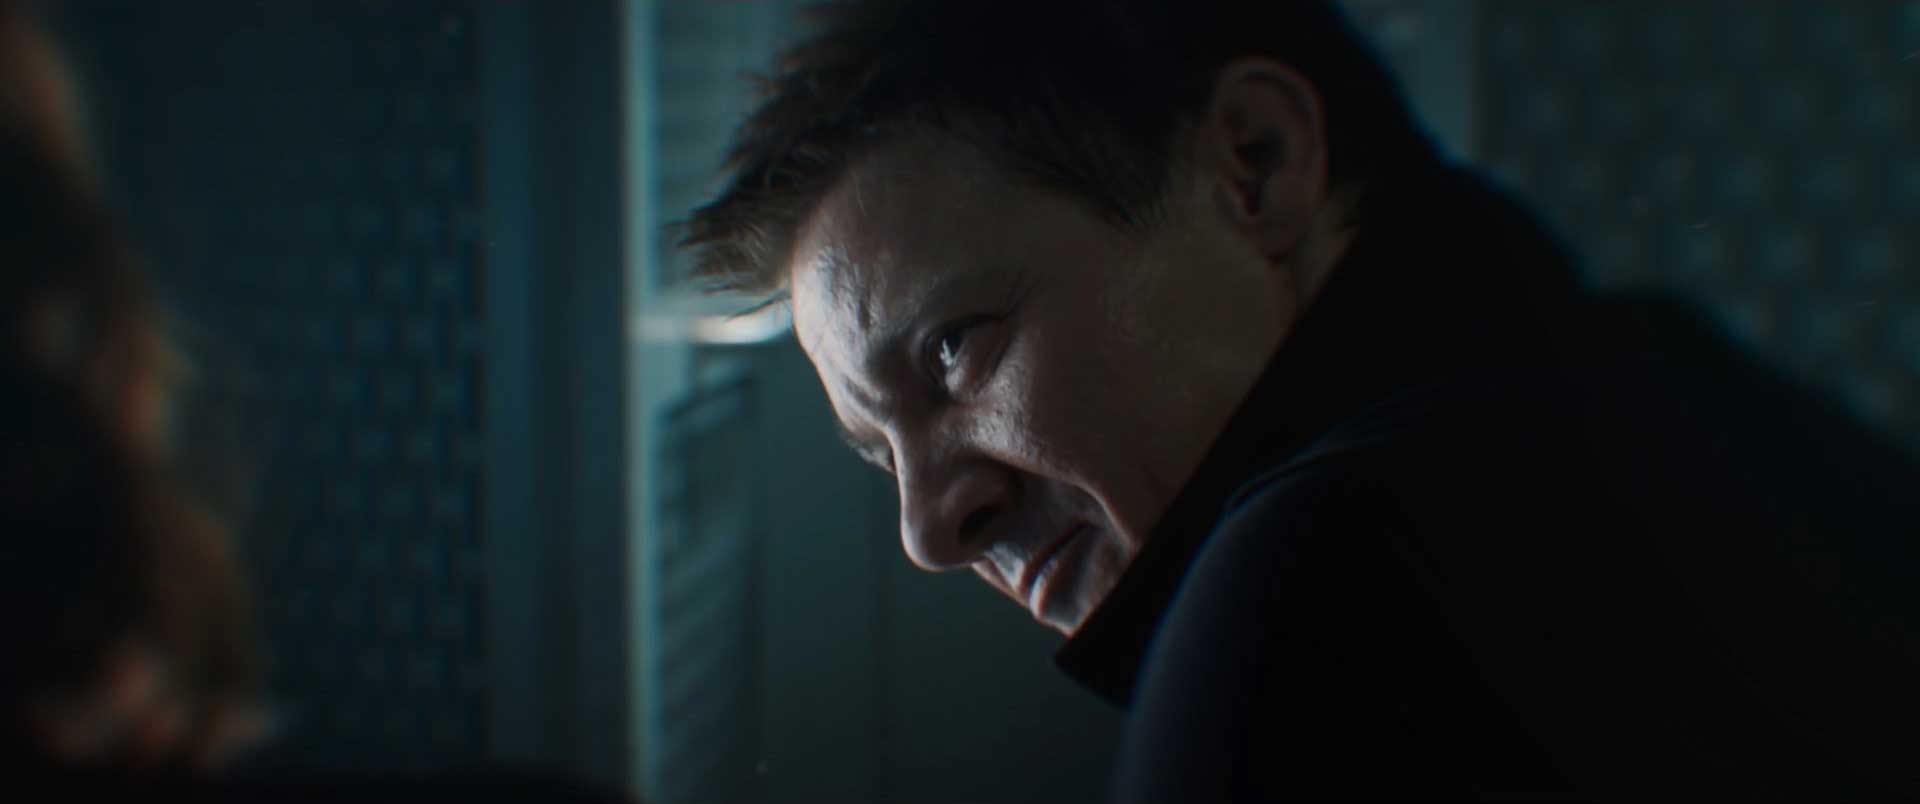 Black Widow Teaser Trailer Breakdown - Jeremy Renner